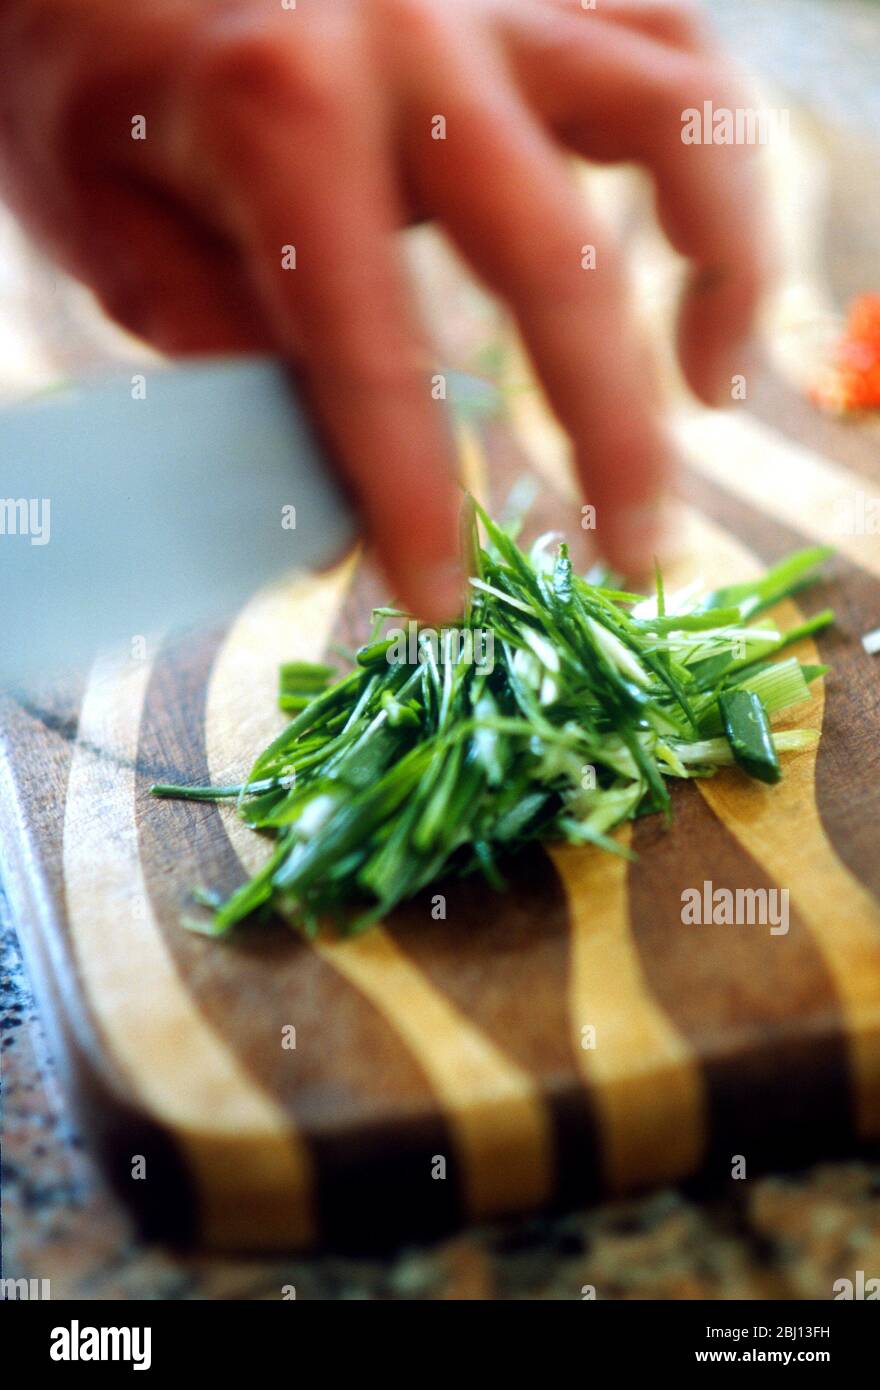 Picar cebollino - Foto de stock